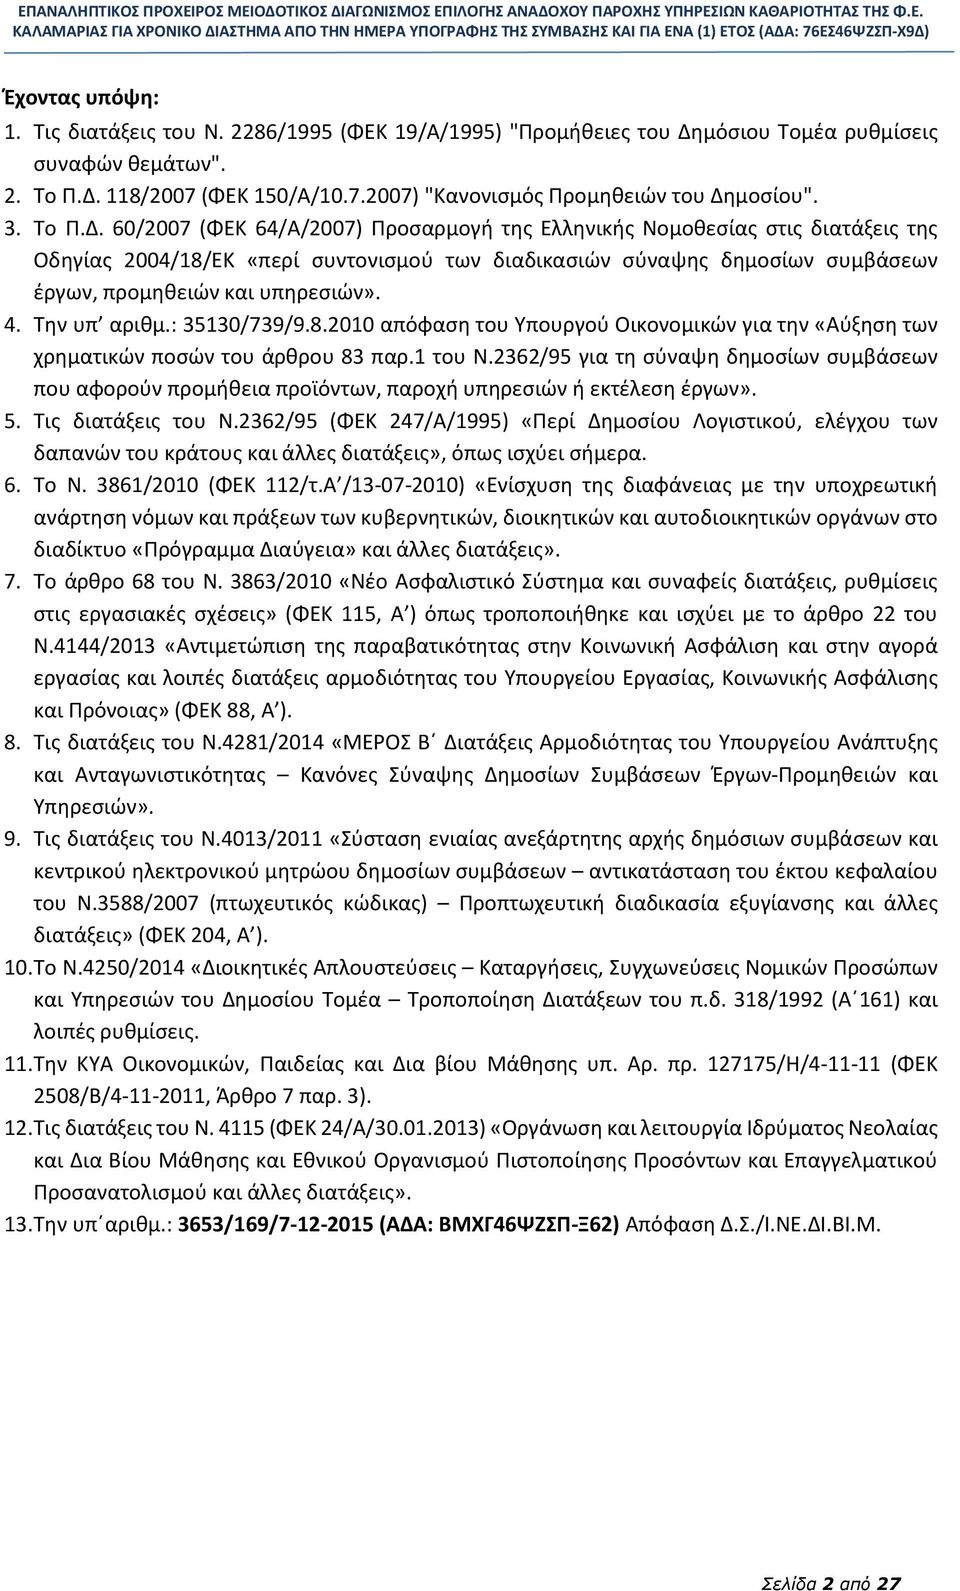 60/2007 (ΦΕΚ 64/Α/2007) Προσαρμογή της Ελληνικής Νομοθεσίας στις διατάξεις της Οδηγίας 2004/18/ΕΚ «περί συντονισμού των διαδικασιών σύναψης δημοσίων συμβάσεων έργων, προμηθειών και υπηρεσιών». 4.